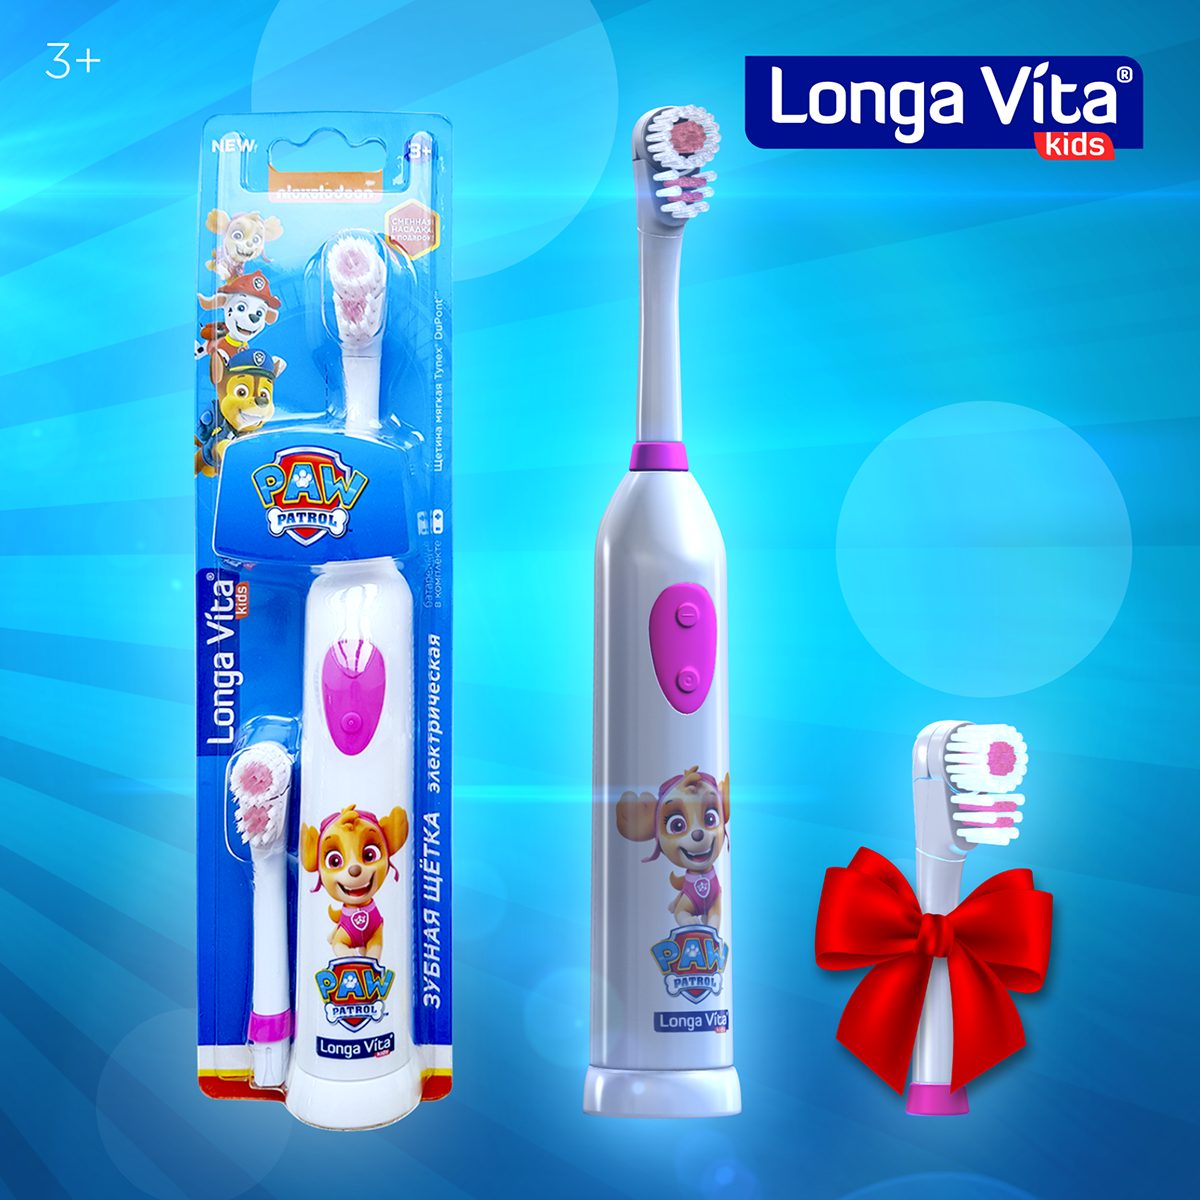 Longa Vita Детская зубная щетка ротационная + 2 сменных насадки Скай, Paw Patrol 3+, Longa vita